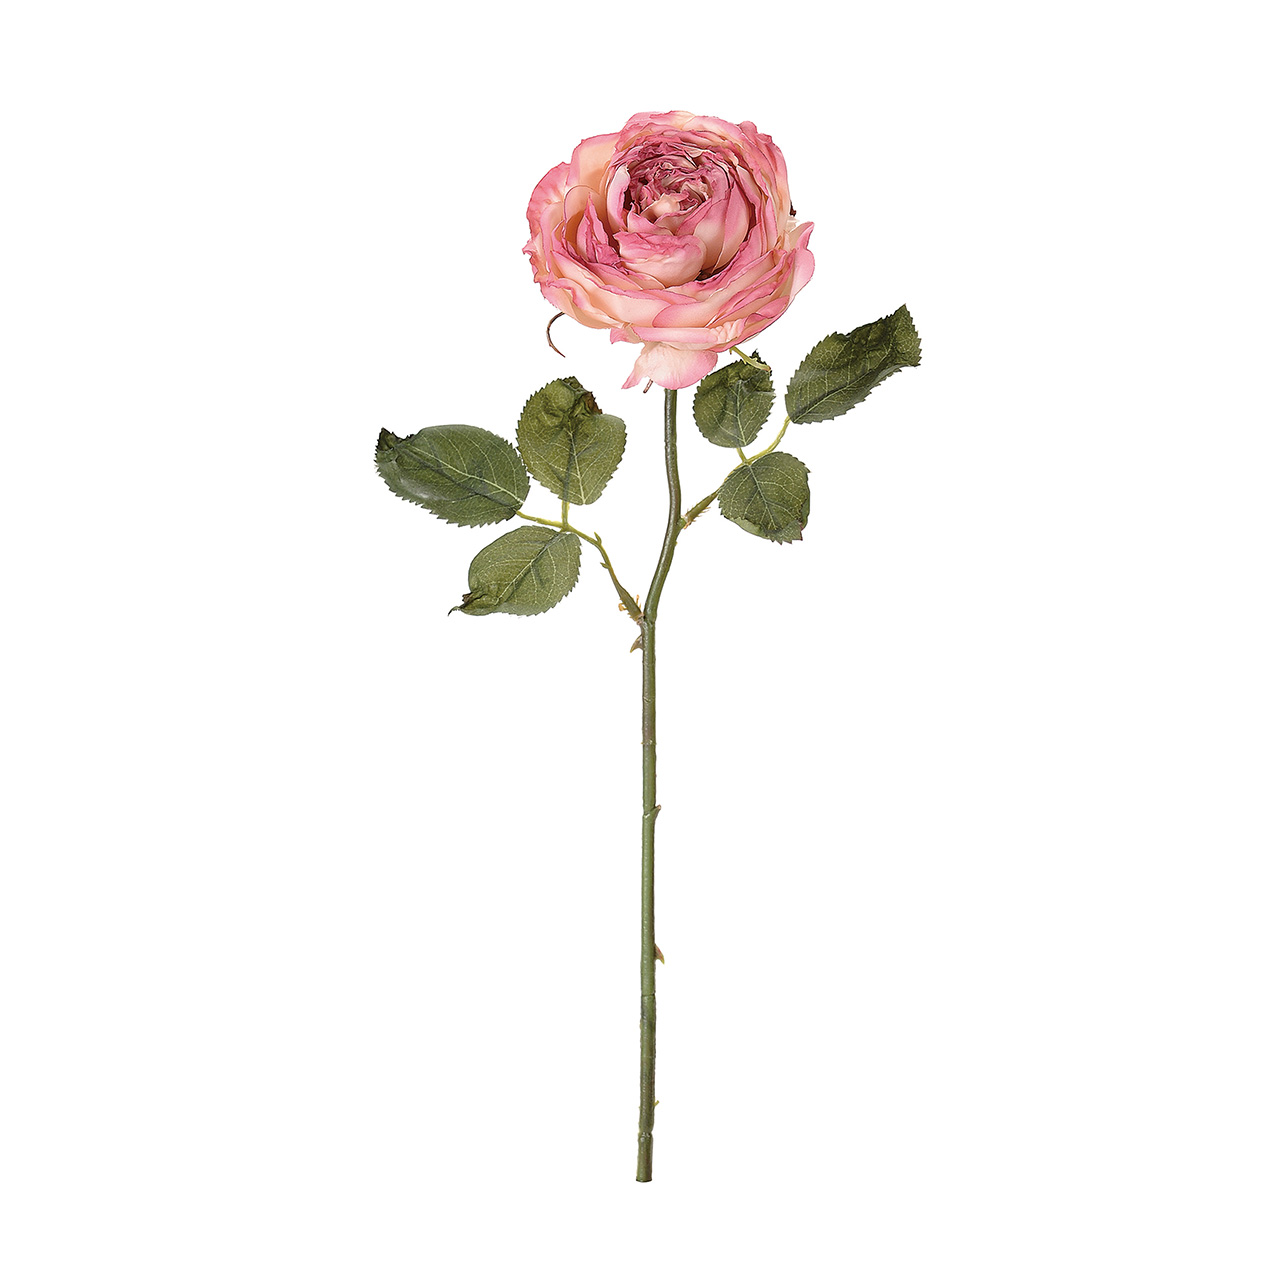 マイフラ 通販 Magiq ドライドガーデンローズ ピンク モーブ ドライフラワー風の造花 アーティフィシャルフラワー Fm 002 ローズ バラ ピンク モーブ Magiq アーティフィシャルフラワー 造花 全国にmagiq 花器 花資材などをお届けします